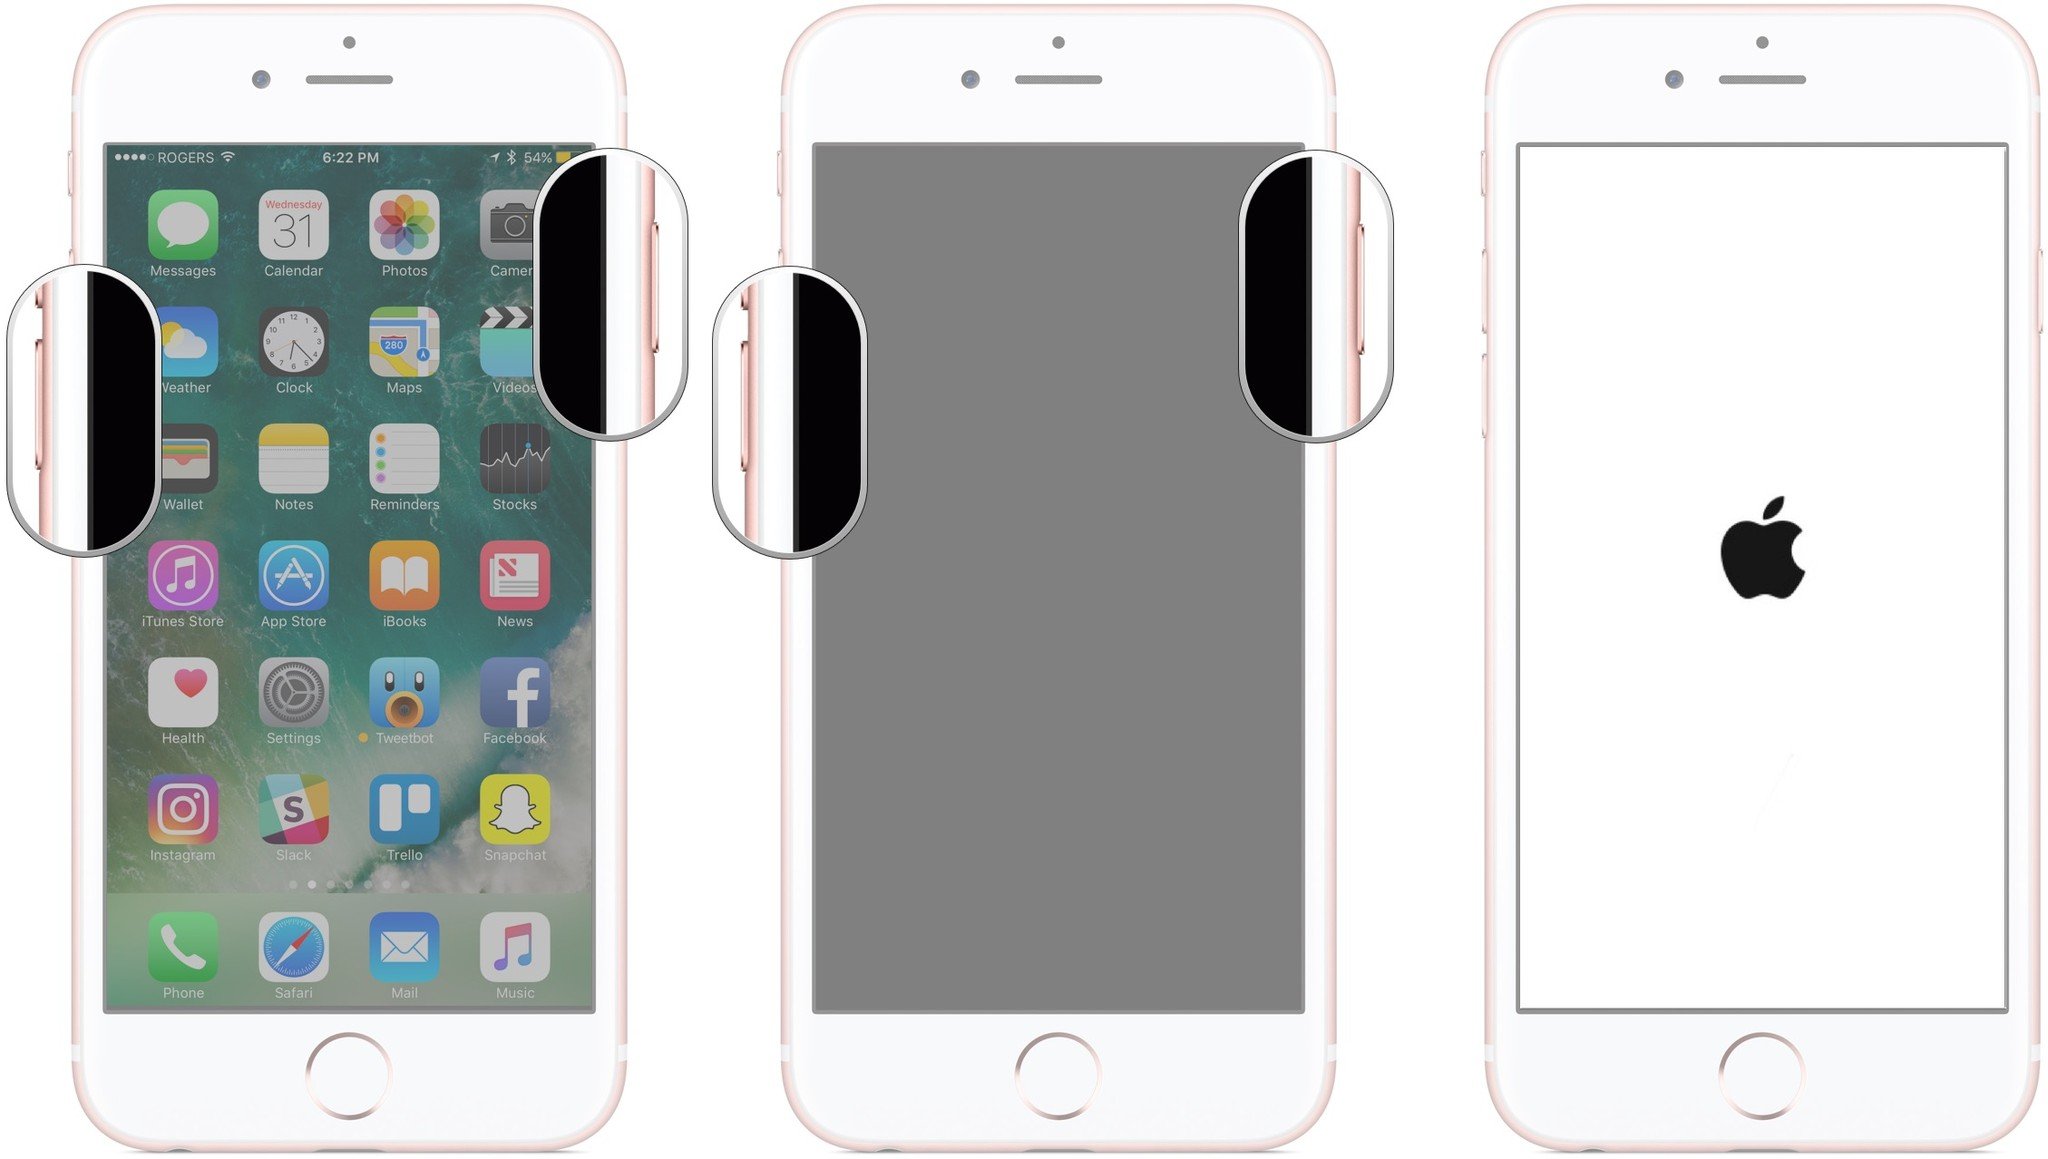 Перезагрузка iPhone с инструкциями по перезагрузке iPhone 7 путем нажатия и удерживания кнопок уменьшения громкости и включения / выключения, пока не появится логотип Apple.